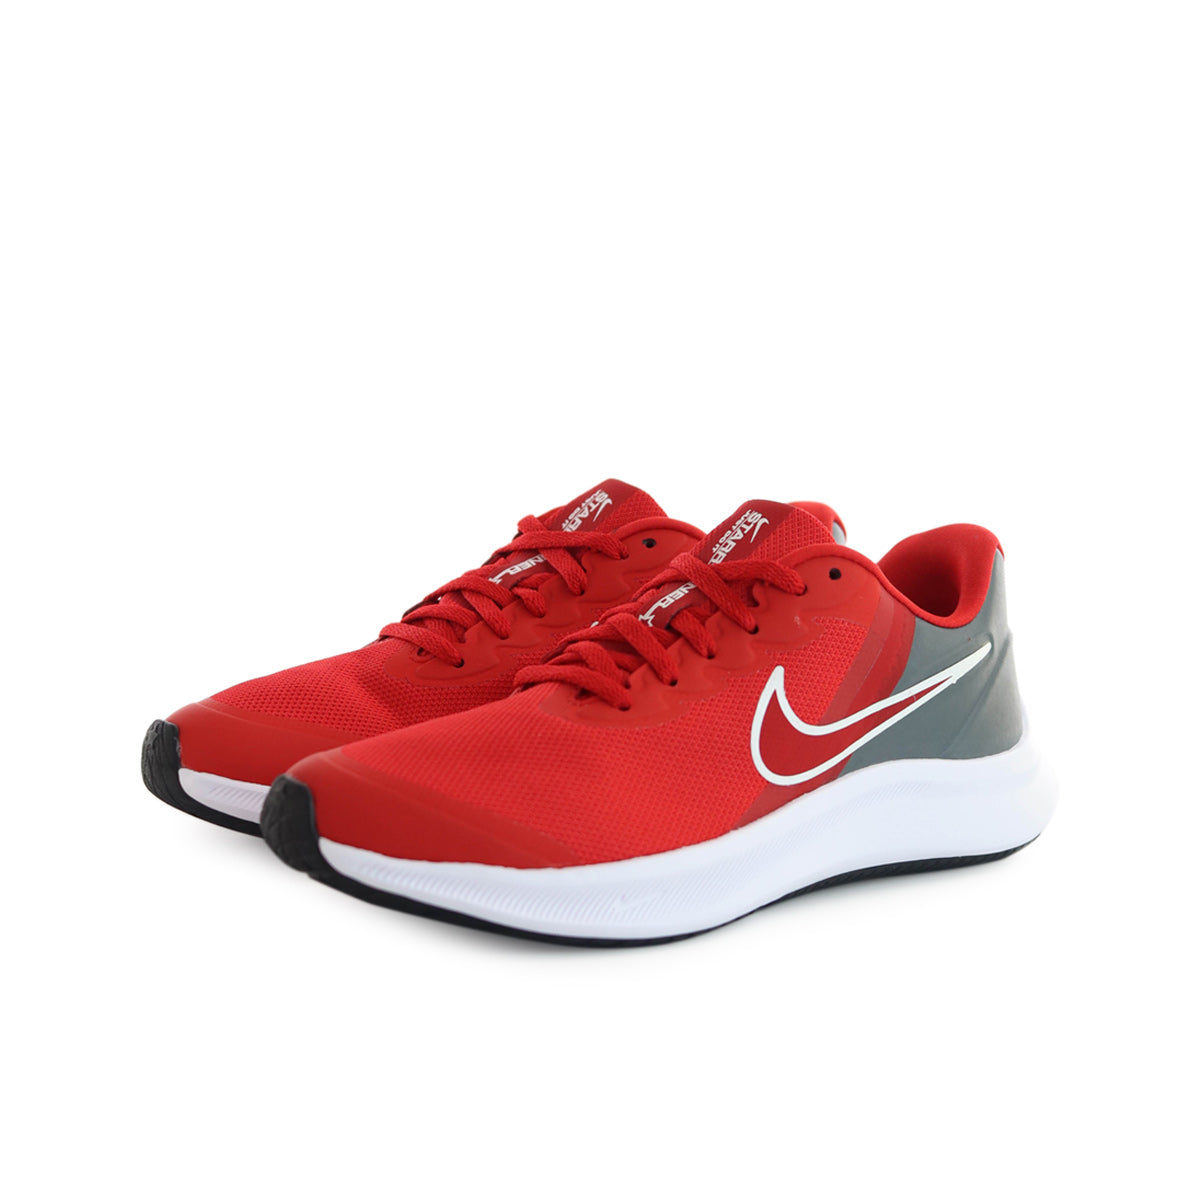 Runner Brooklyn (GS) Fashion 3 DA2776-607 x Star – Footwear Nike rot-weiss-grau -